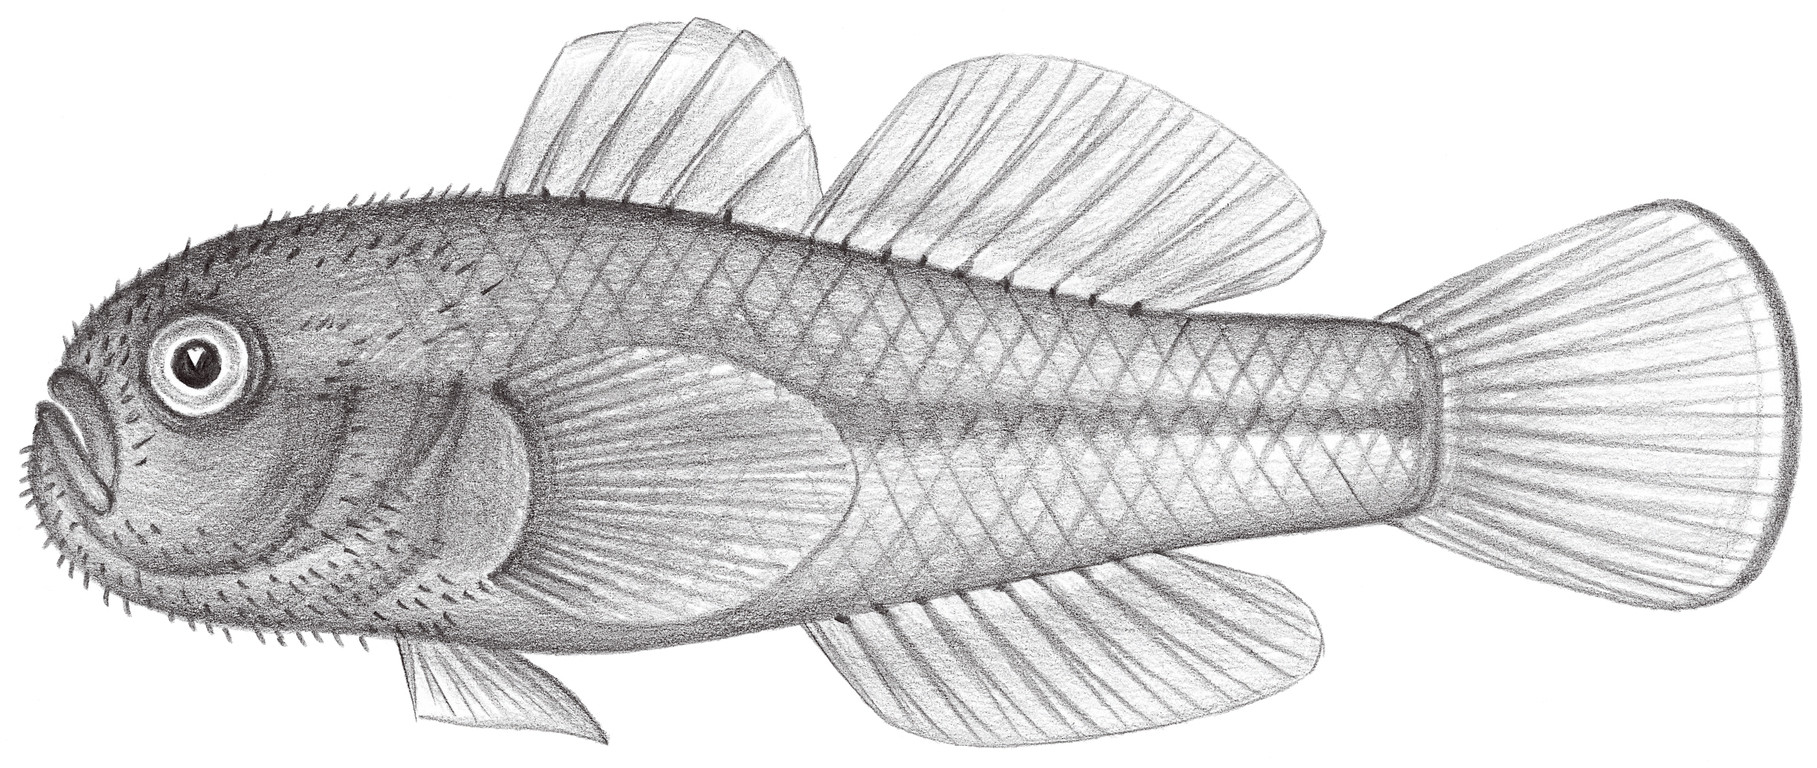 2177.	黃副葉鰕虎 Paragobiodon xanthosoma (Bleeker, 1852)